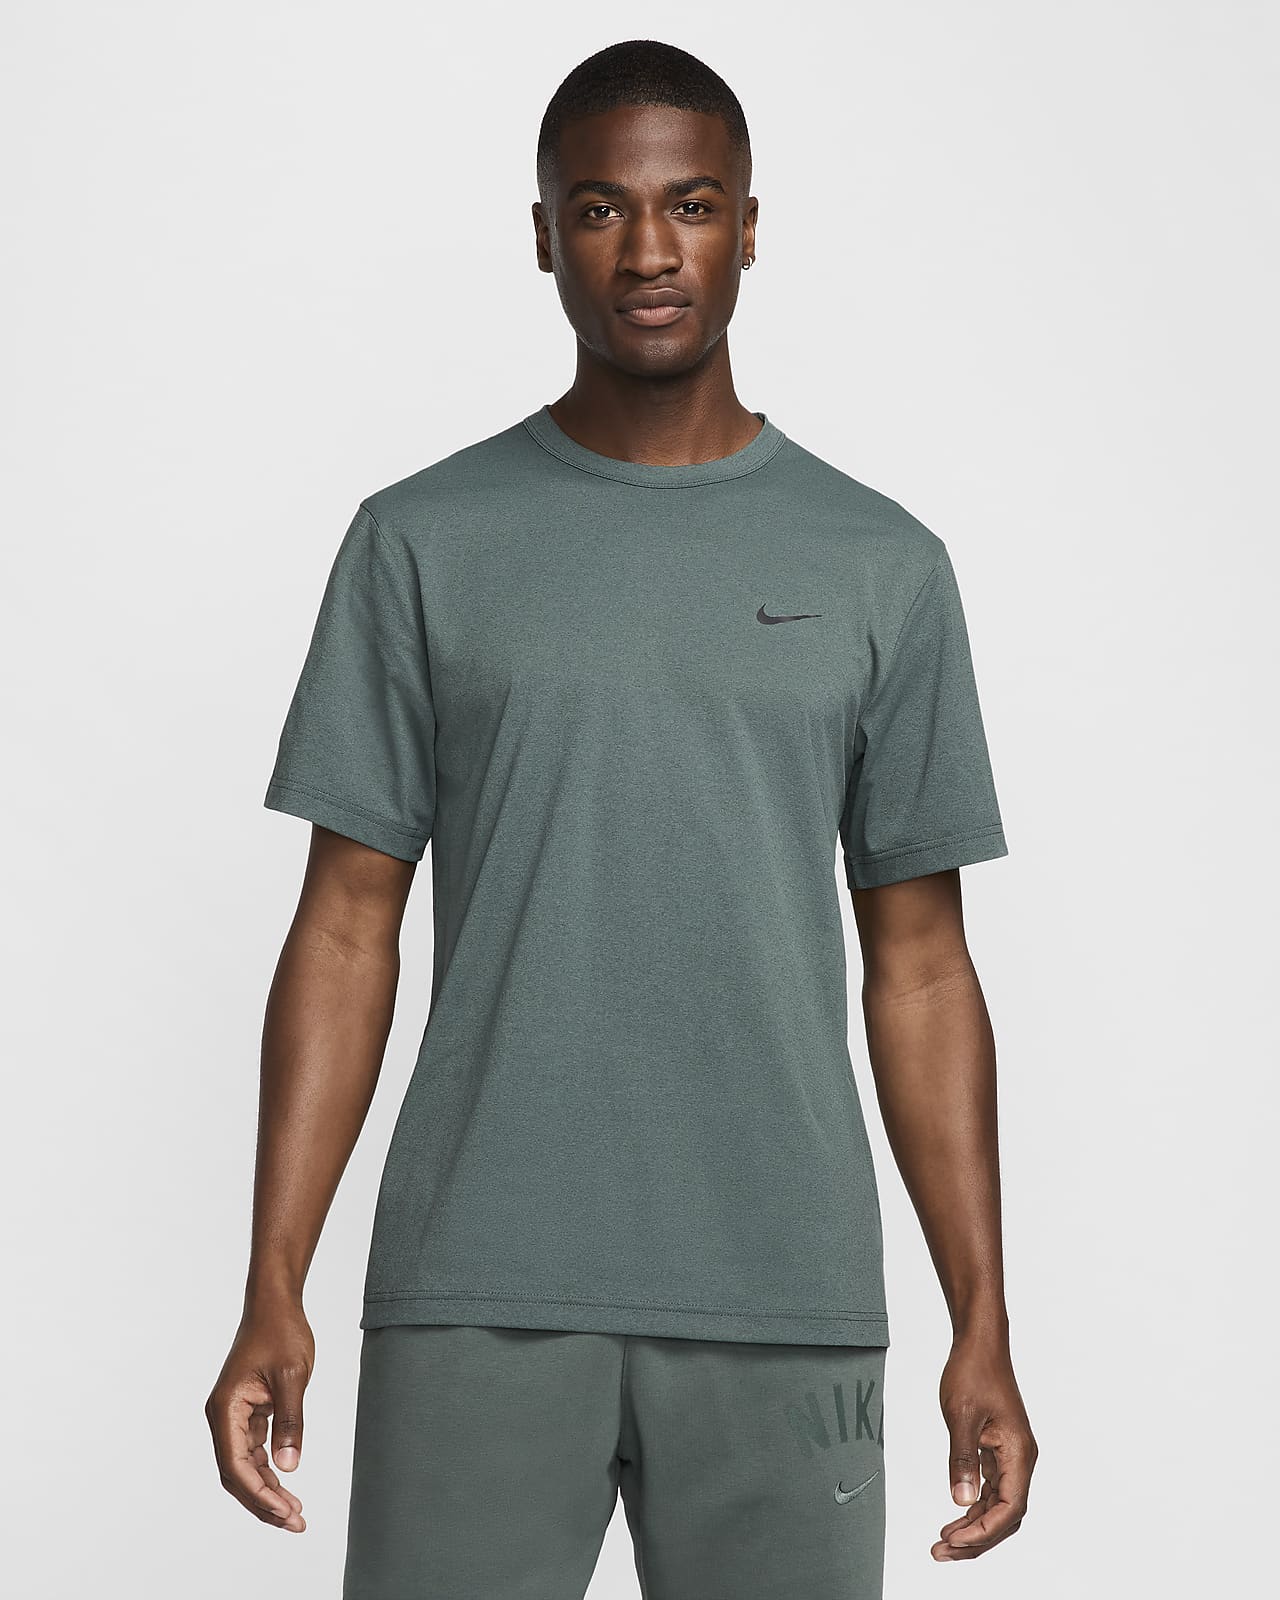 Nike Hyverse Dri-FIT UV Kısa Kollu Çok Yönlü Erkek Üstü